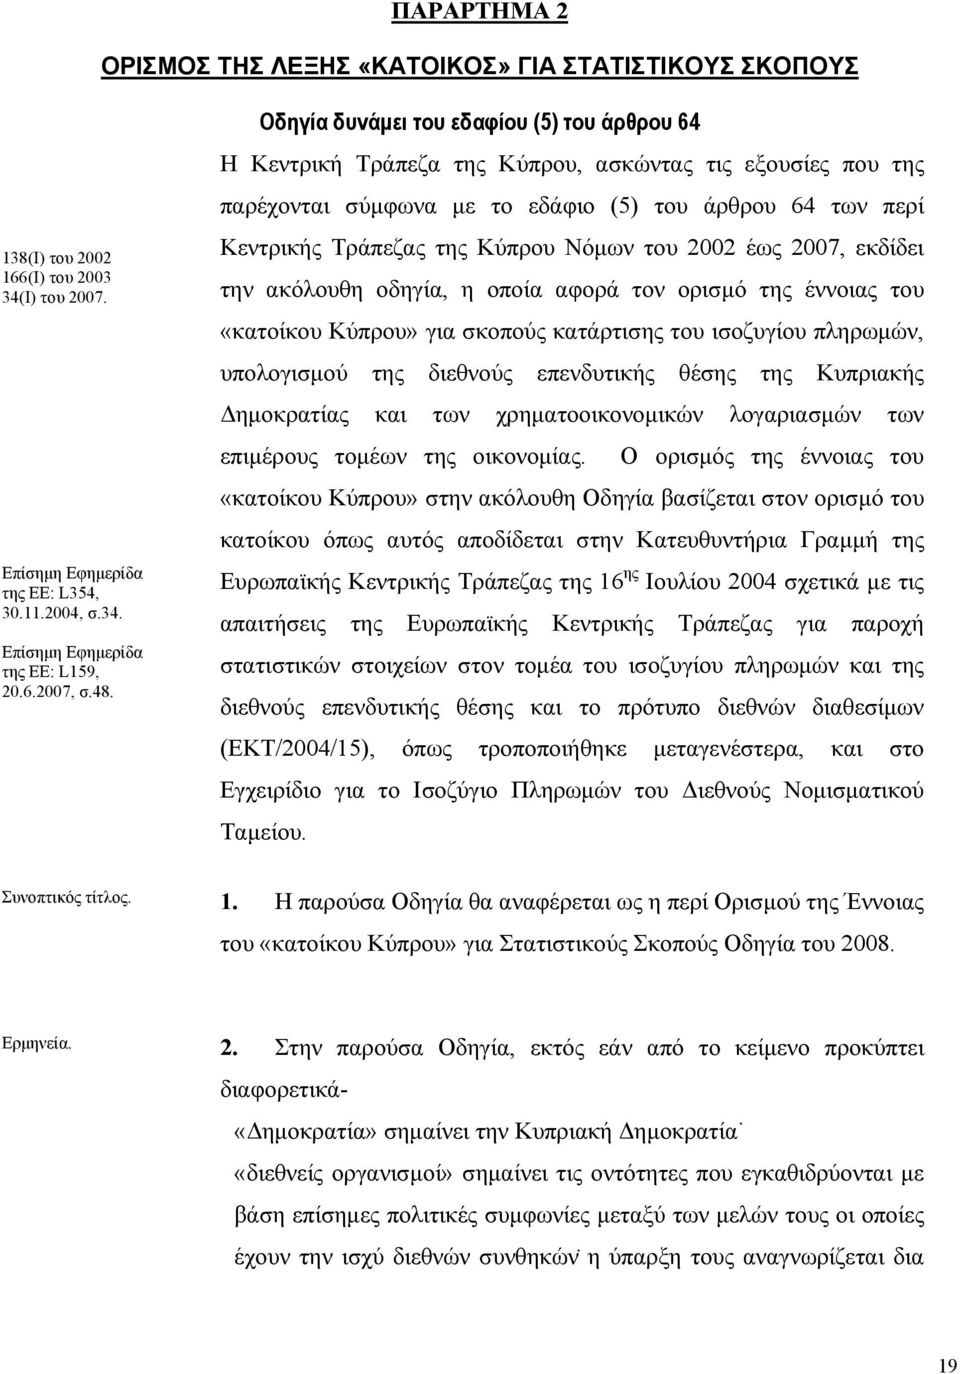 Οδηγία δυνάμει του εδαφίου (5) του άρθρου 64 Η Κεντρική Τράπεζα της Κύπρου, ασκώντας τις εξουσίες που της παρέχονται σύμφωνα με το εδάφιο (5) του άρθρου 64 των περί Κεντρικής Τράπεζας της Κύπρου